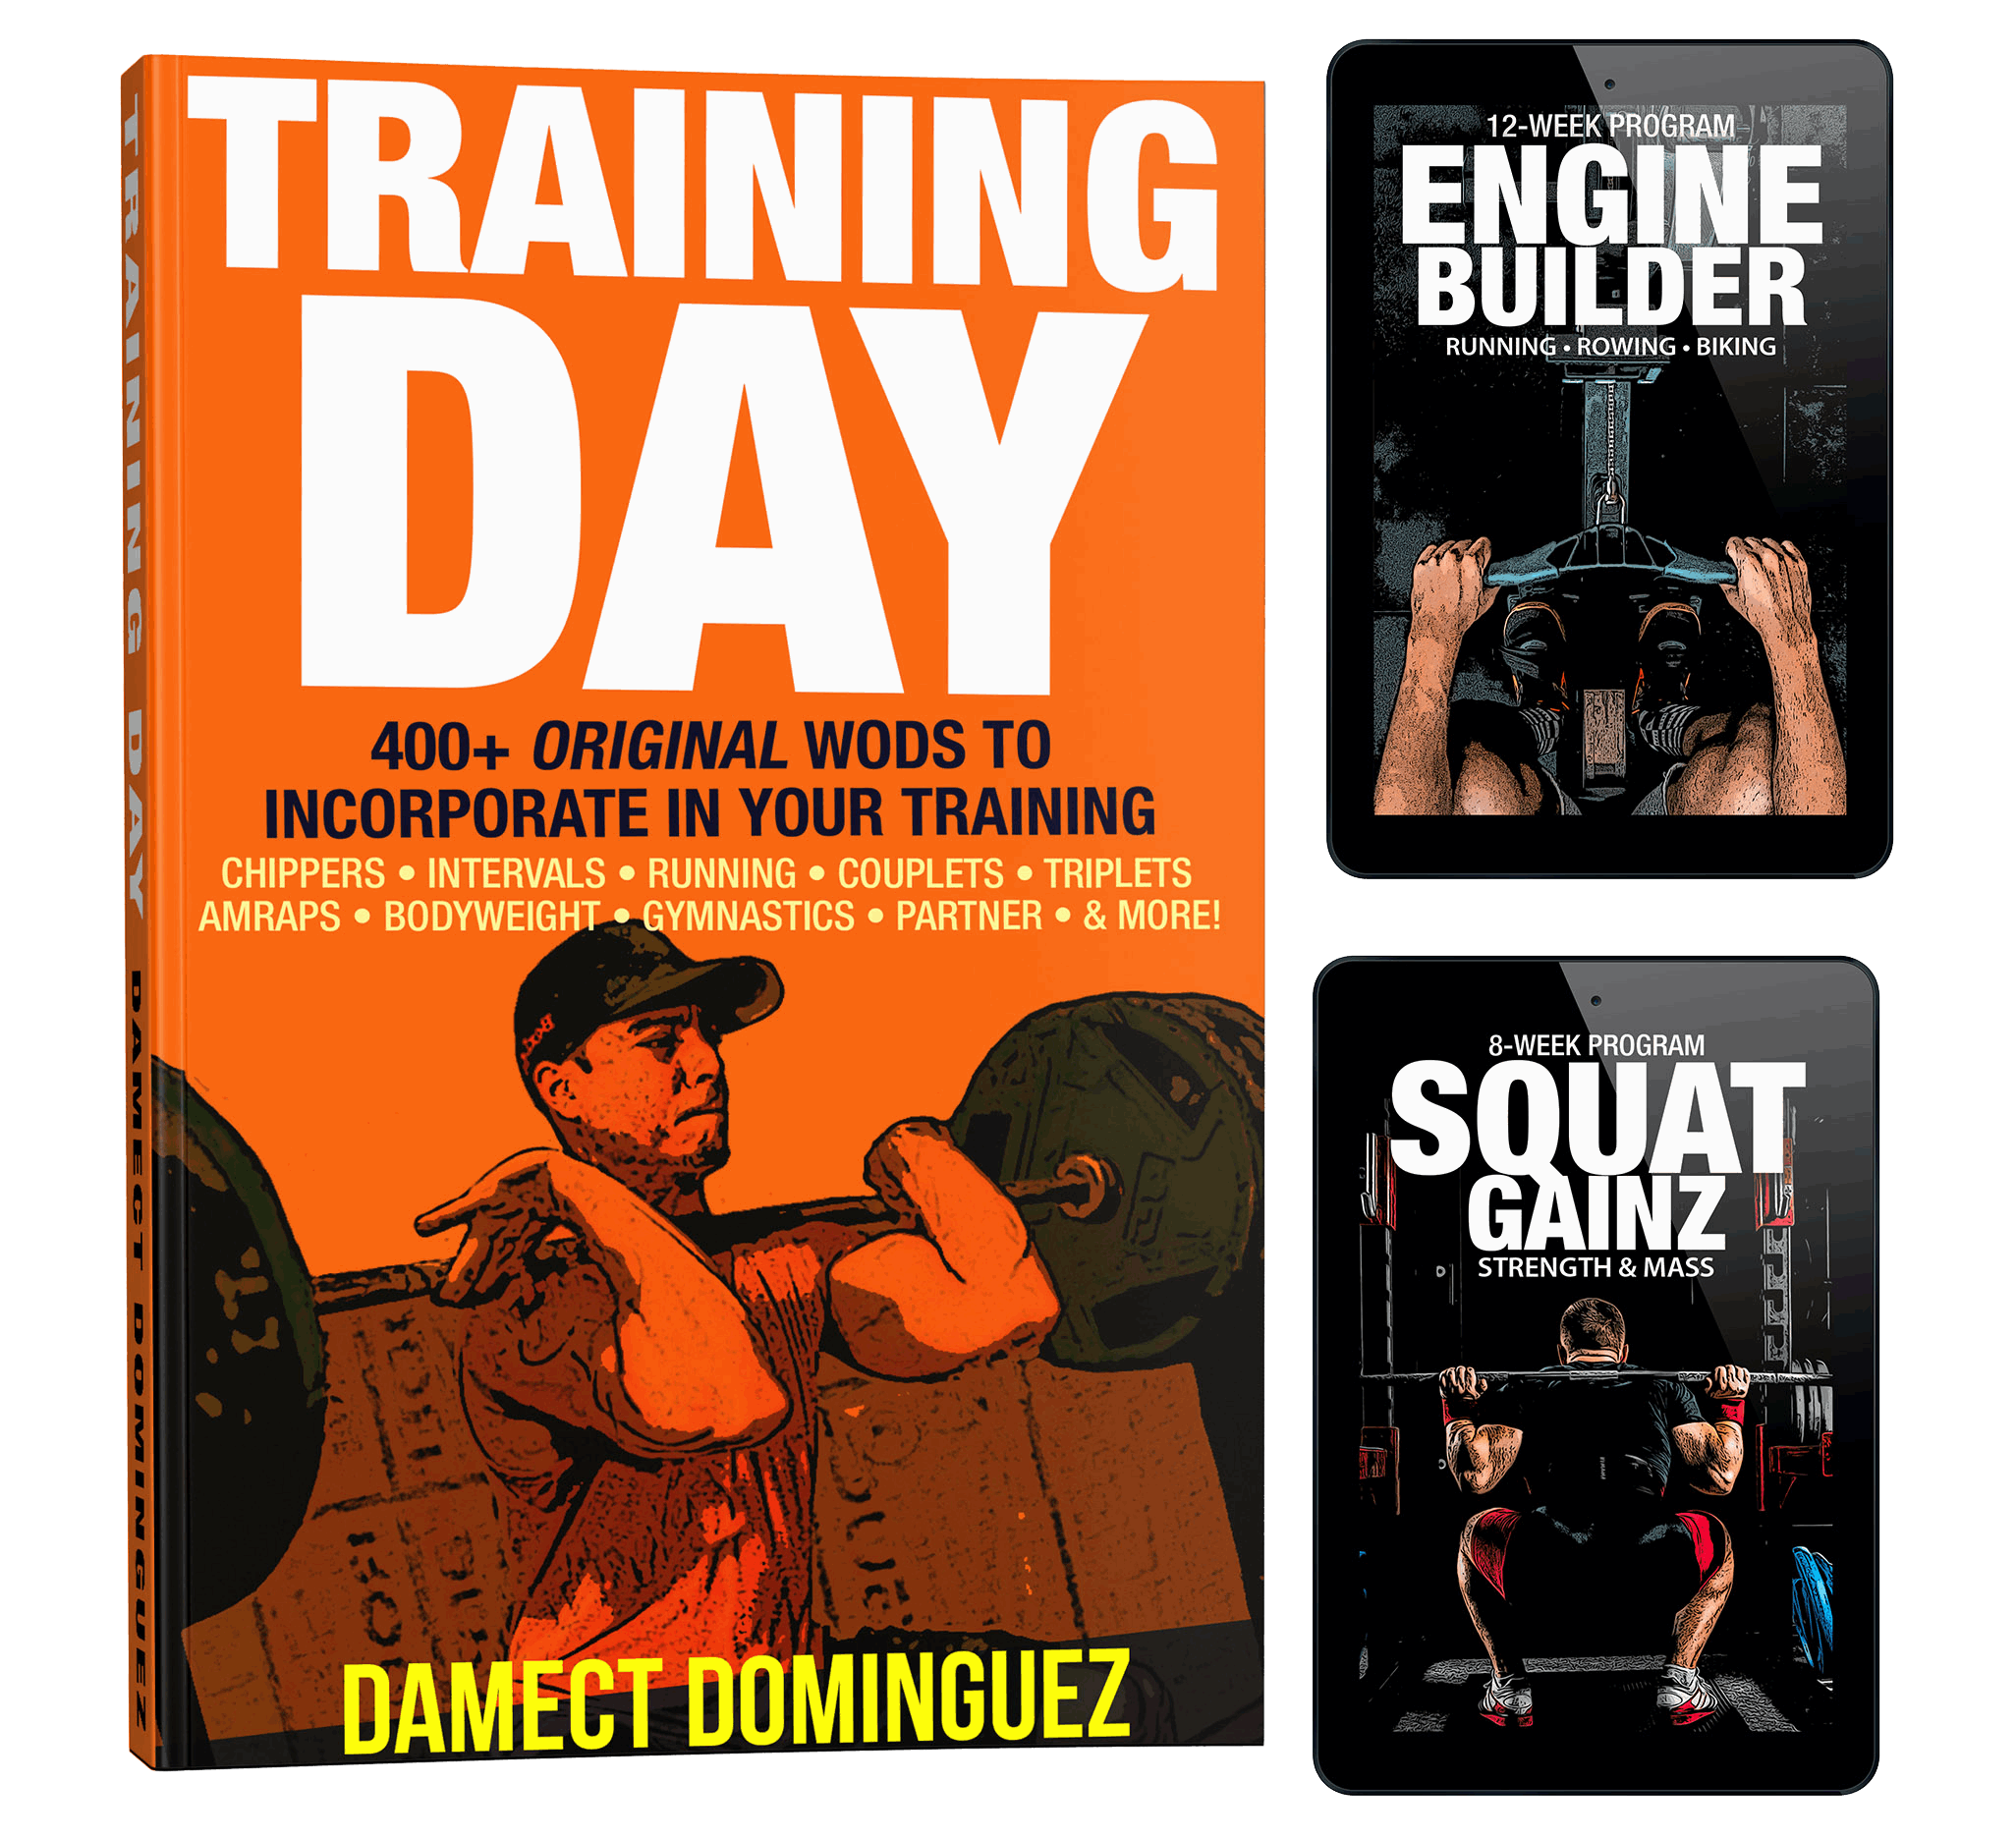 Training Day Bundle #2: Training Day Volume I + Squat & Endurance Programs